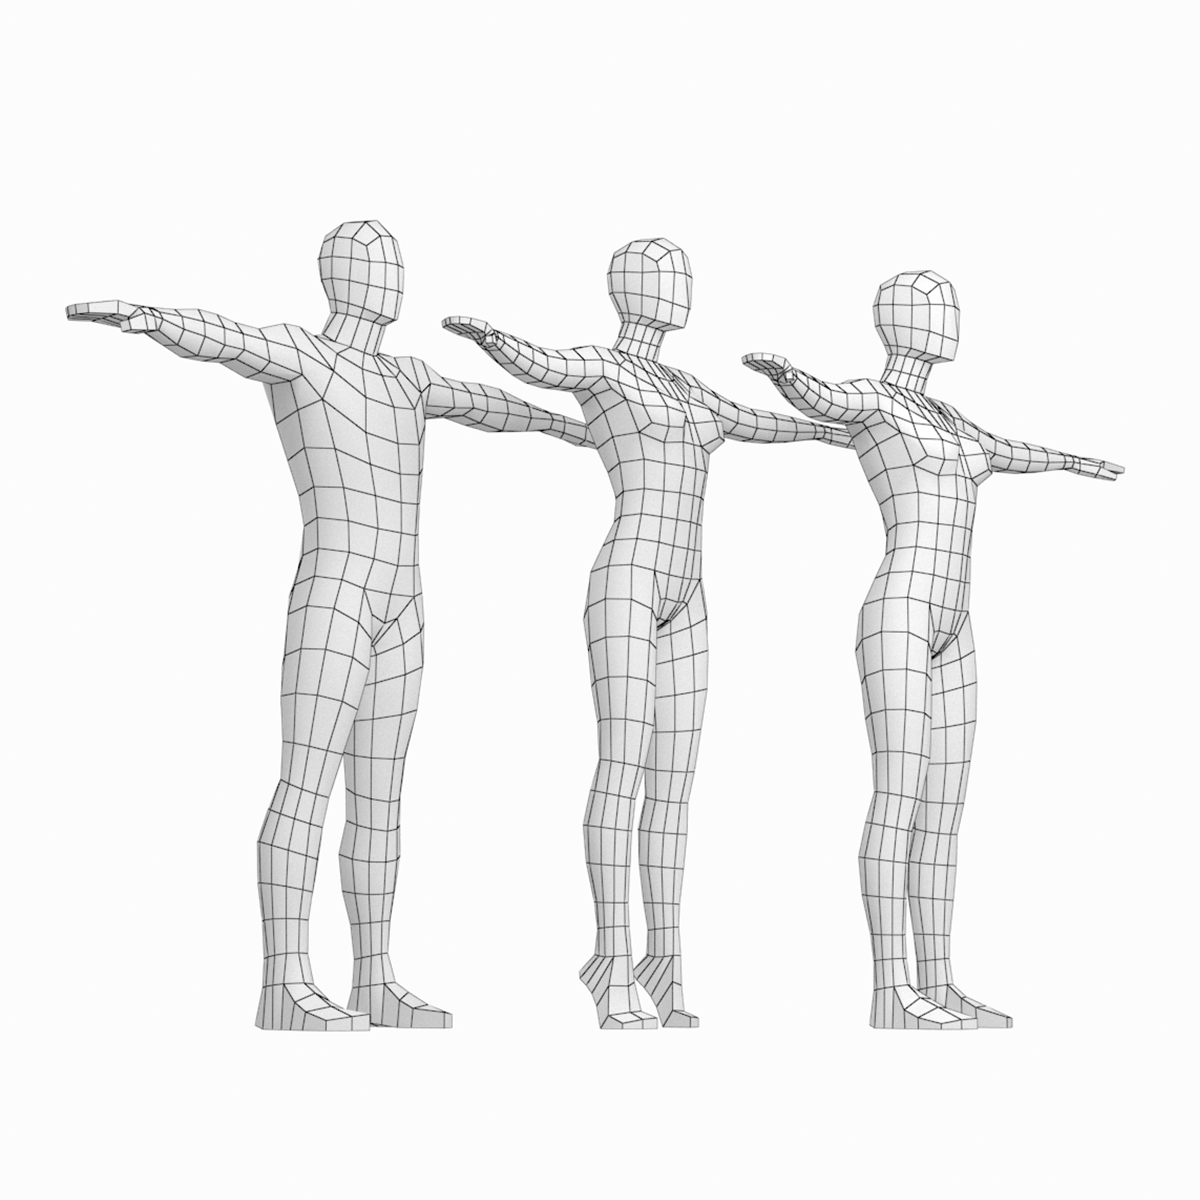 PoseFix: Correcting 3D Human Poses with Natural Language